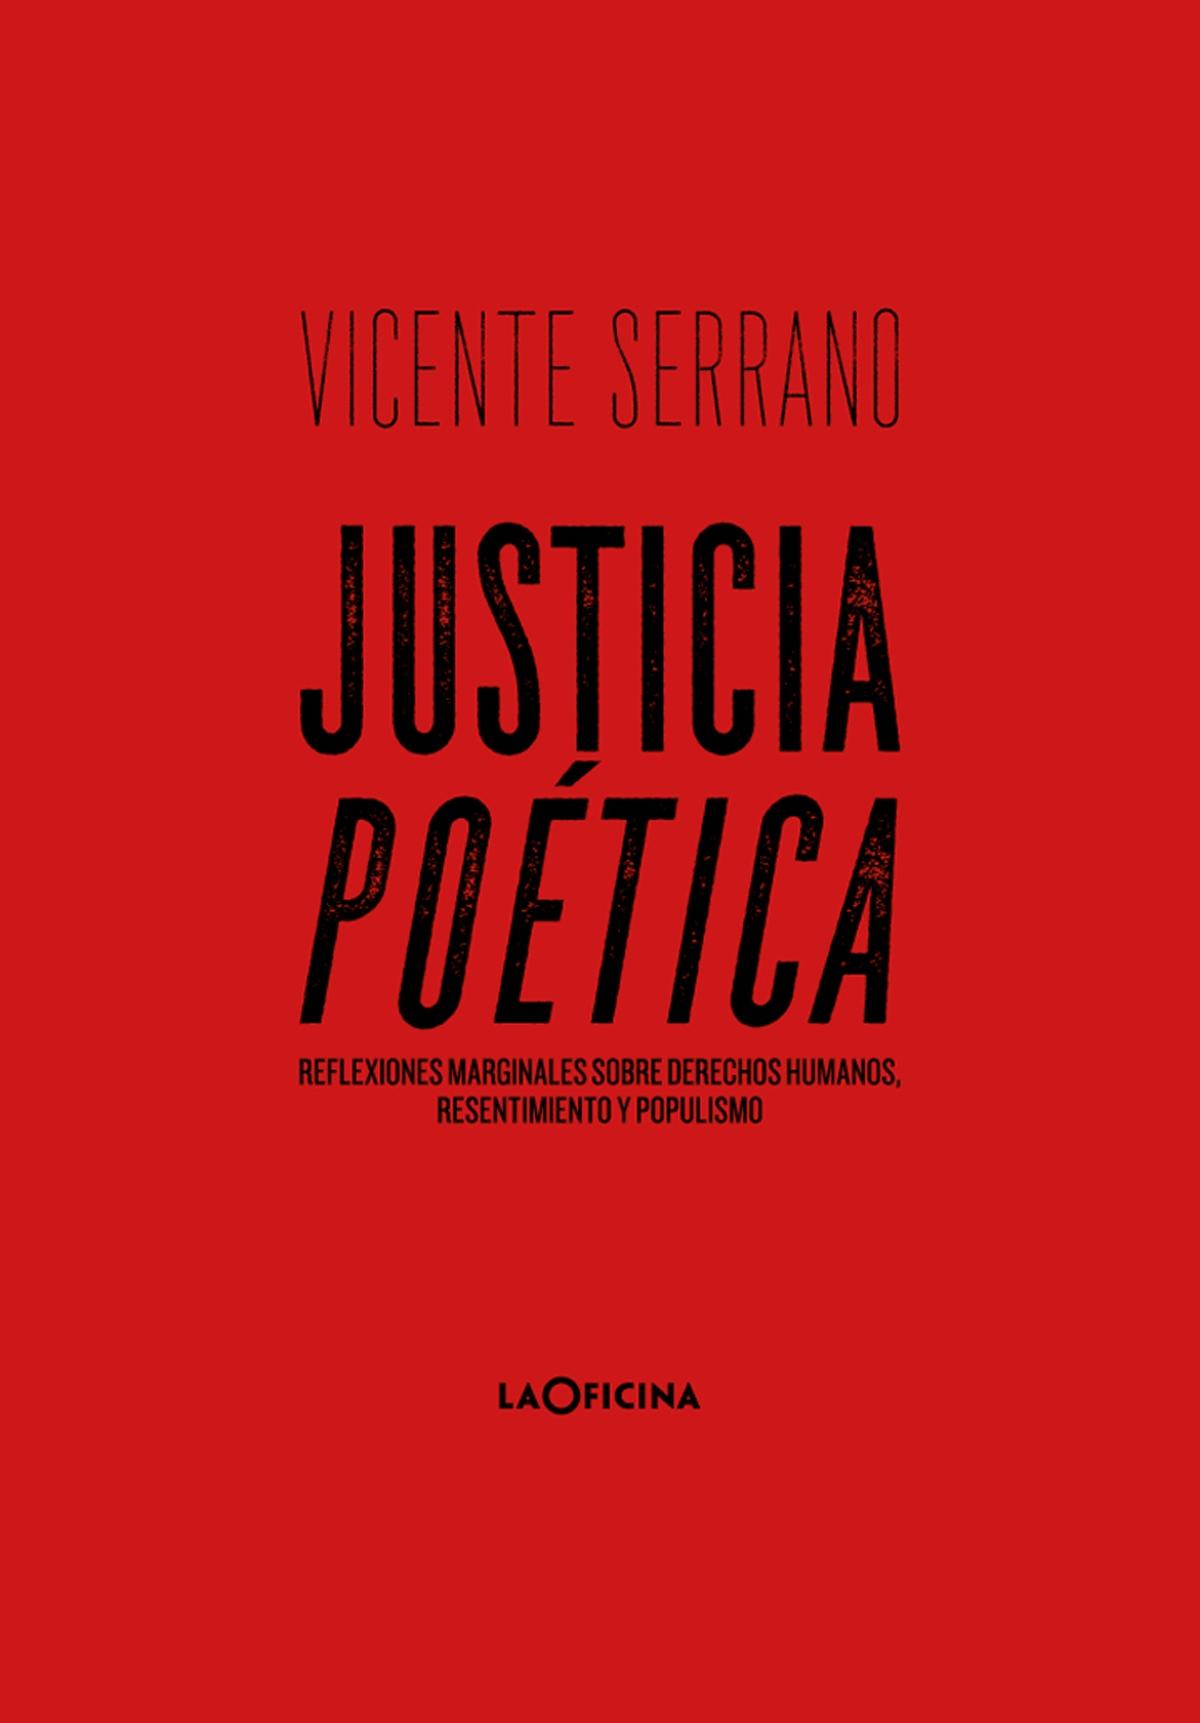 Justicia poética "Reflexiones marginales sobre derechos humanos, resentimiento y populismo"